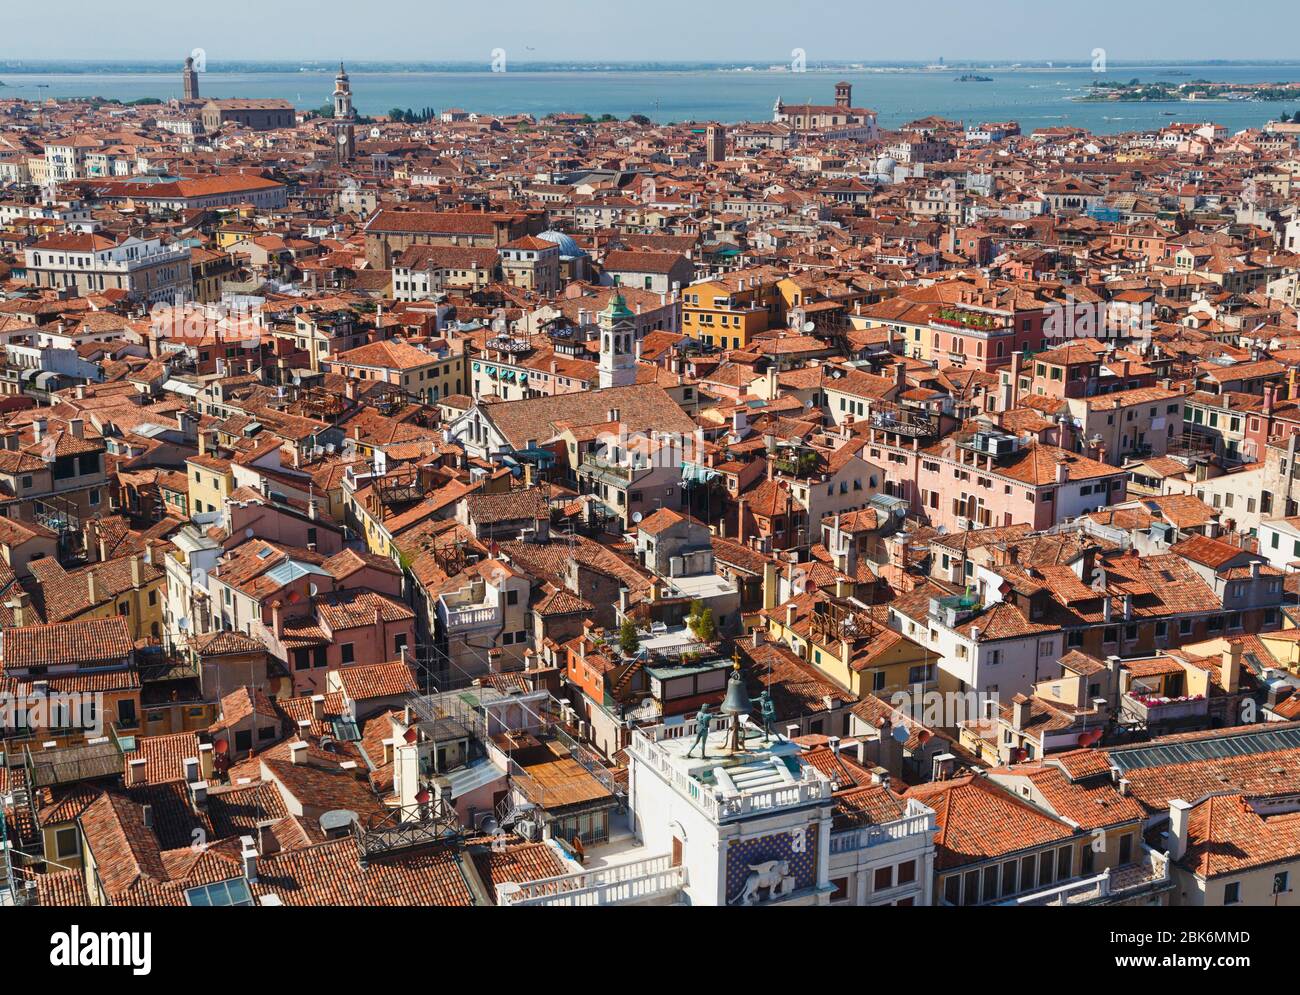 Venedig, Provinz Venedig, Region Venetien, Italien. Die Dächer von Venedig mit dem Torre dell'Orologlio oder dem Uhrturm im Vordergrund. Stockfoto